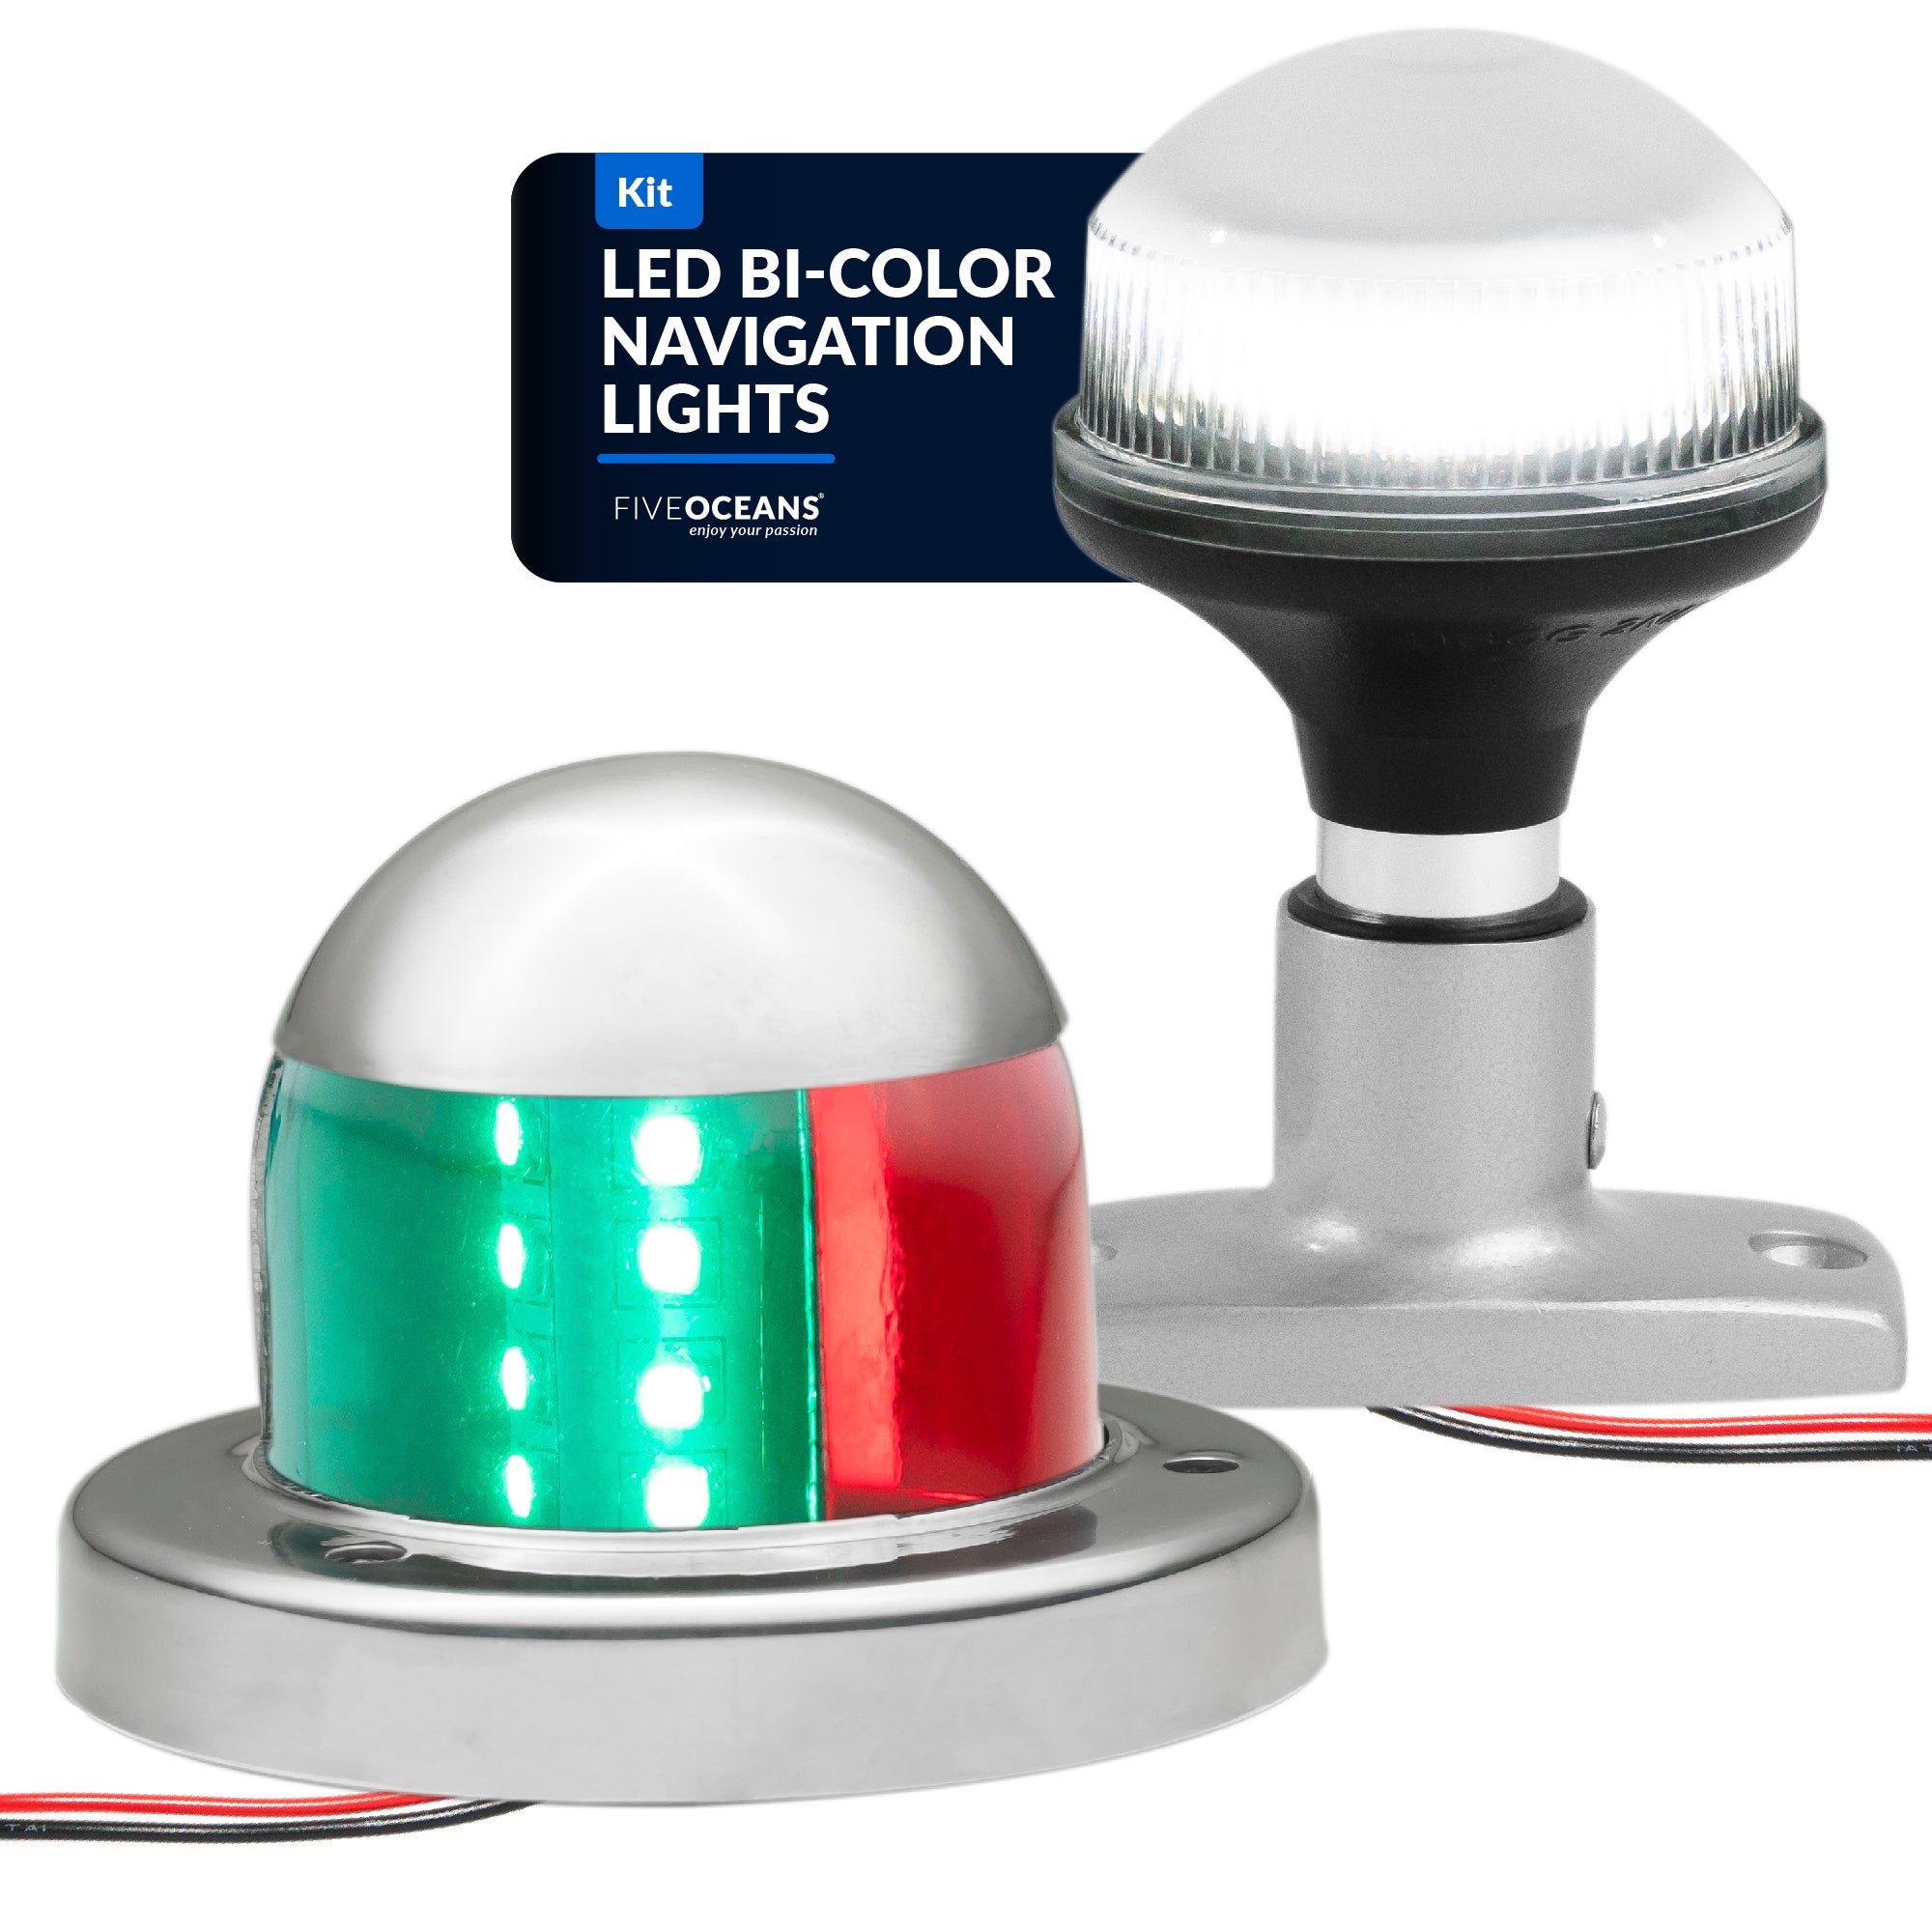 LED Anchor Light and Boat Navigation Lights Set - FO4512-C1